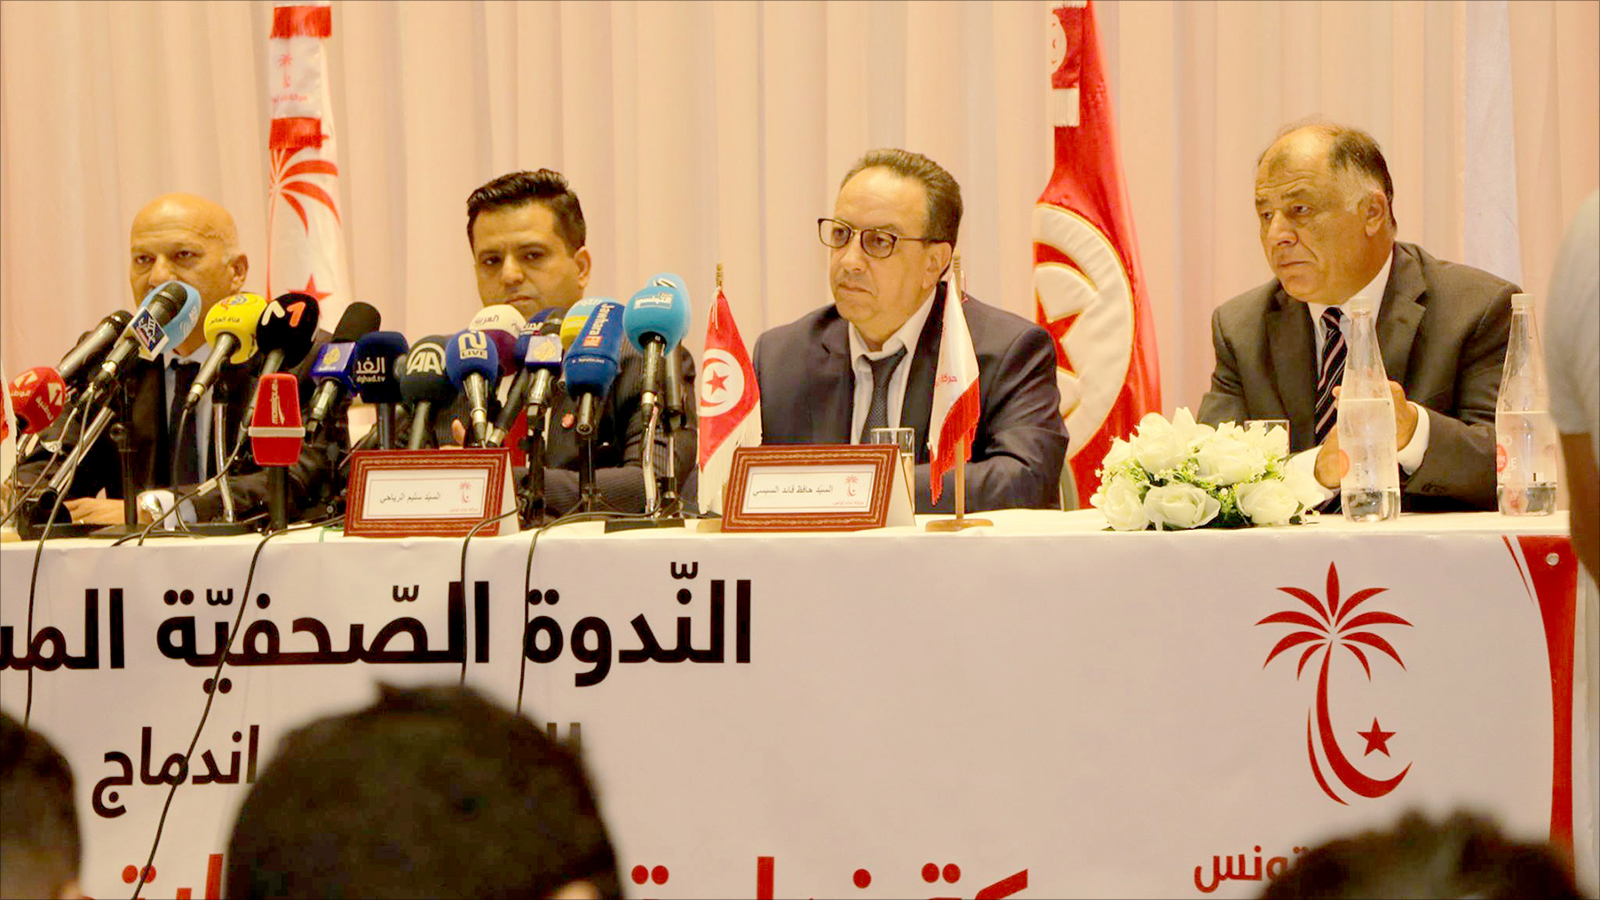 ‪حركة نداء تونس طالبت وزراءها في الحكومة بالانسحاب منها فورا‬ (مواقع التواصل الاجتماعي)